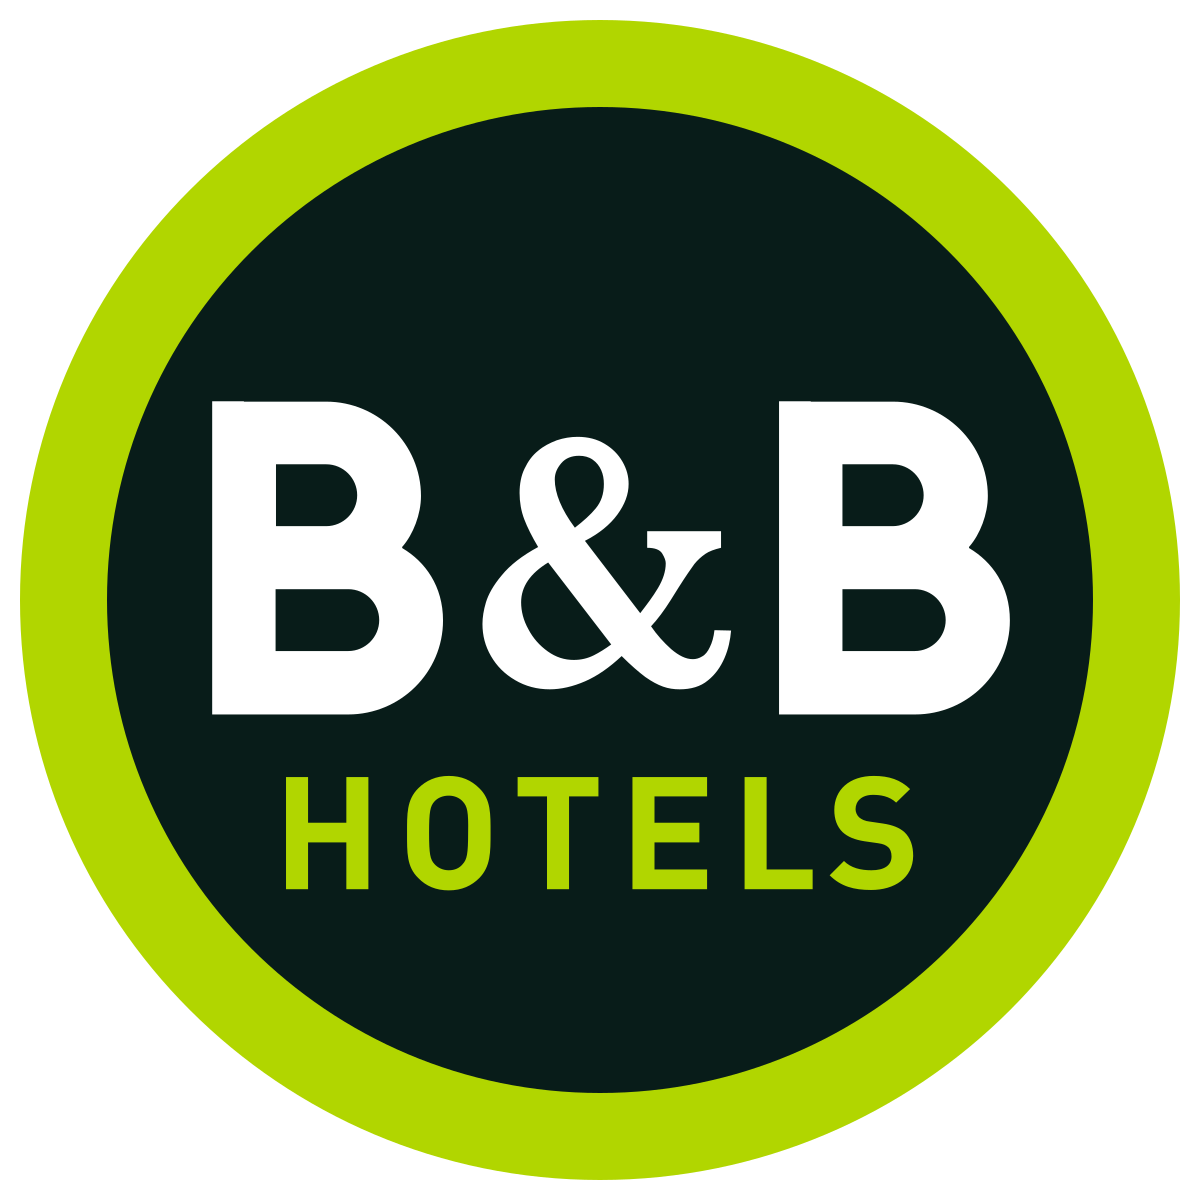 B&b Hotels (6 Hotels)